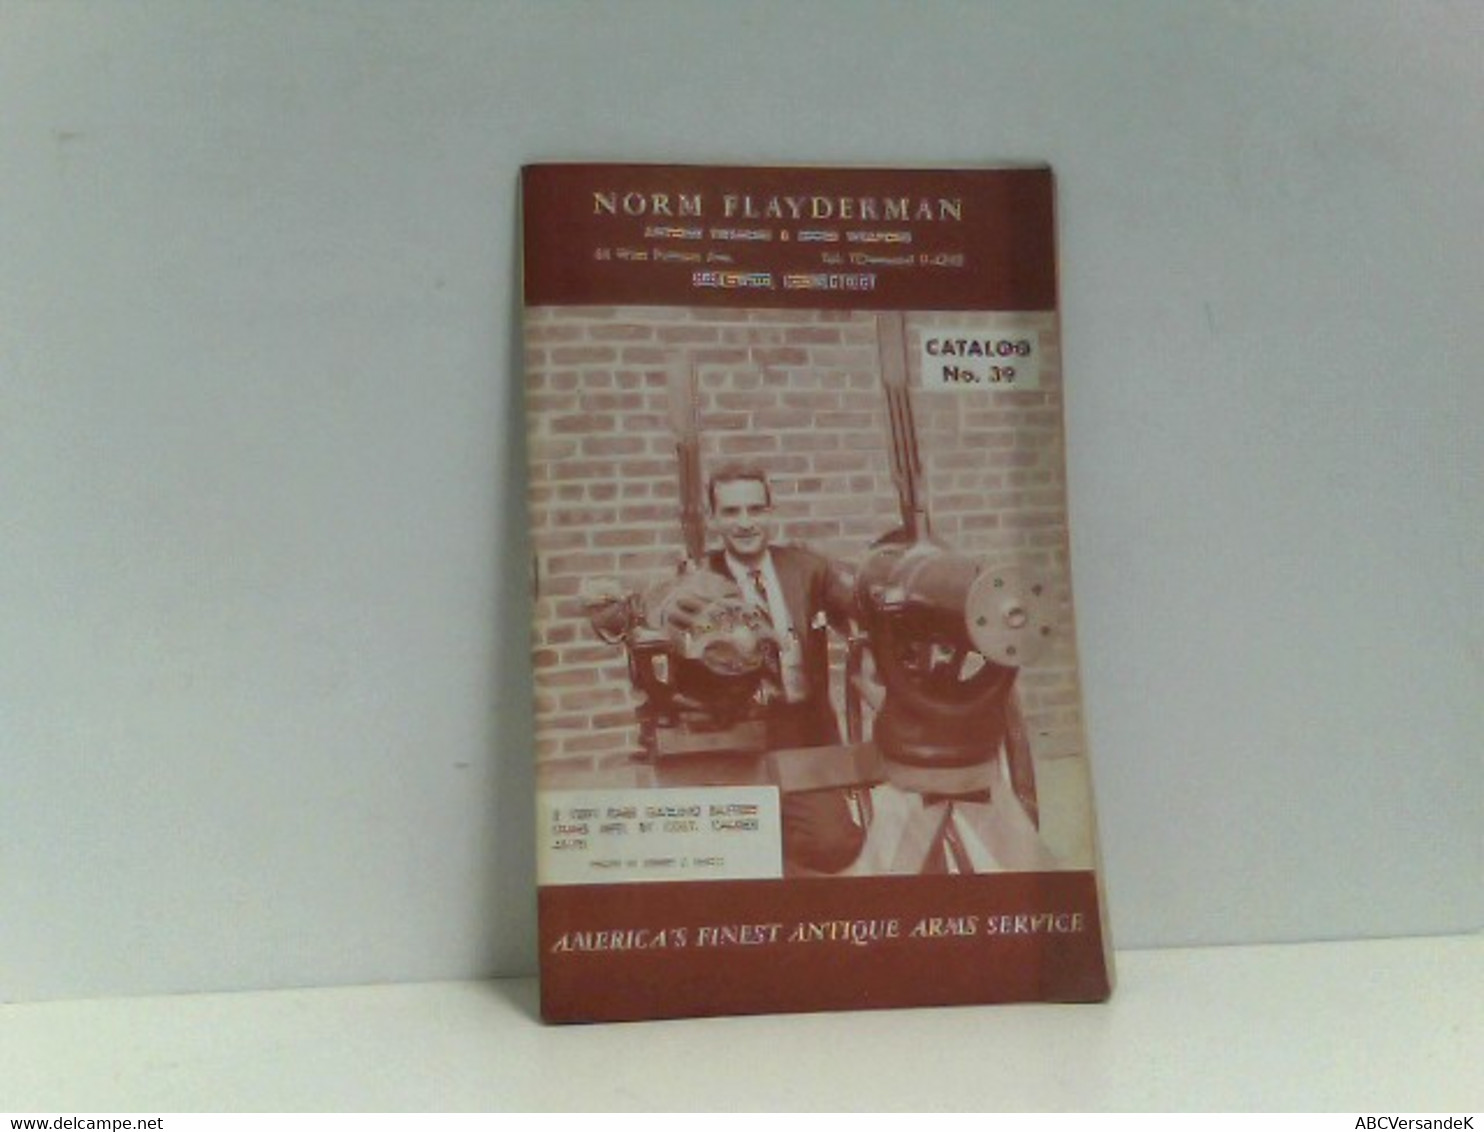 Norm Flayderman Catalog No. 39 - Militär & Polizei